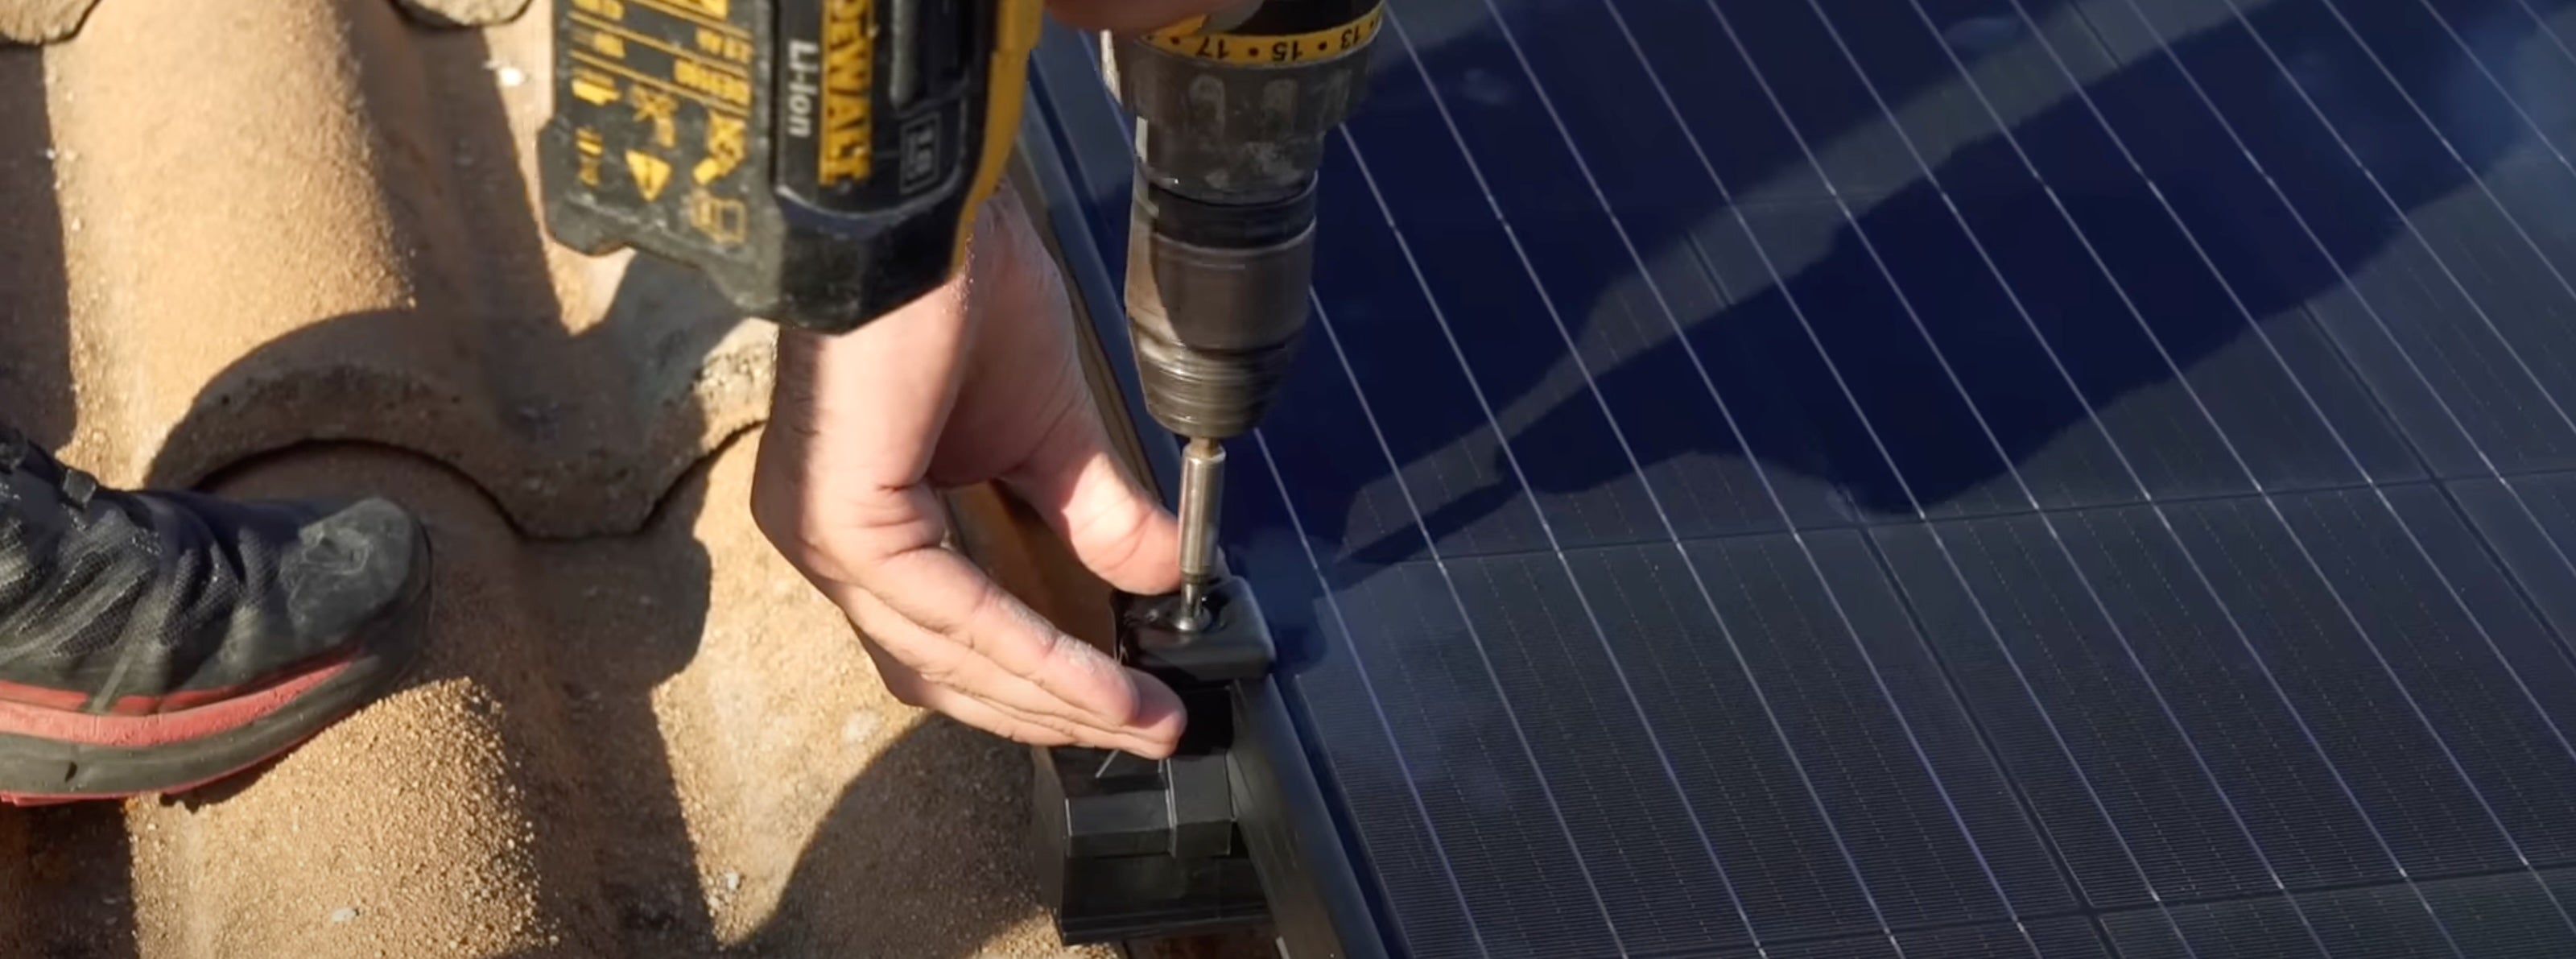 Un panneau solaire en train d'être installé a l'aide d'une visseuse